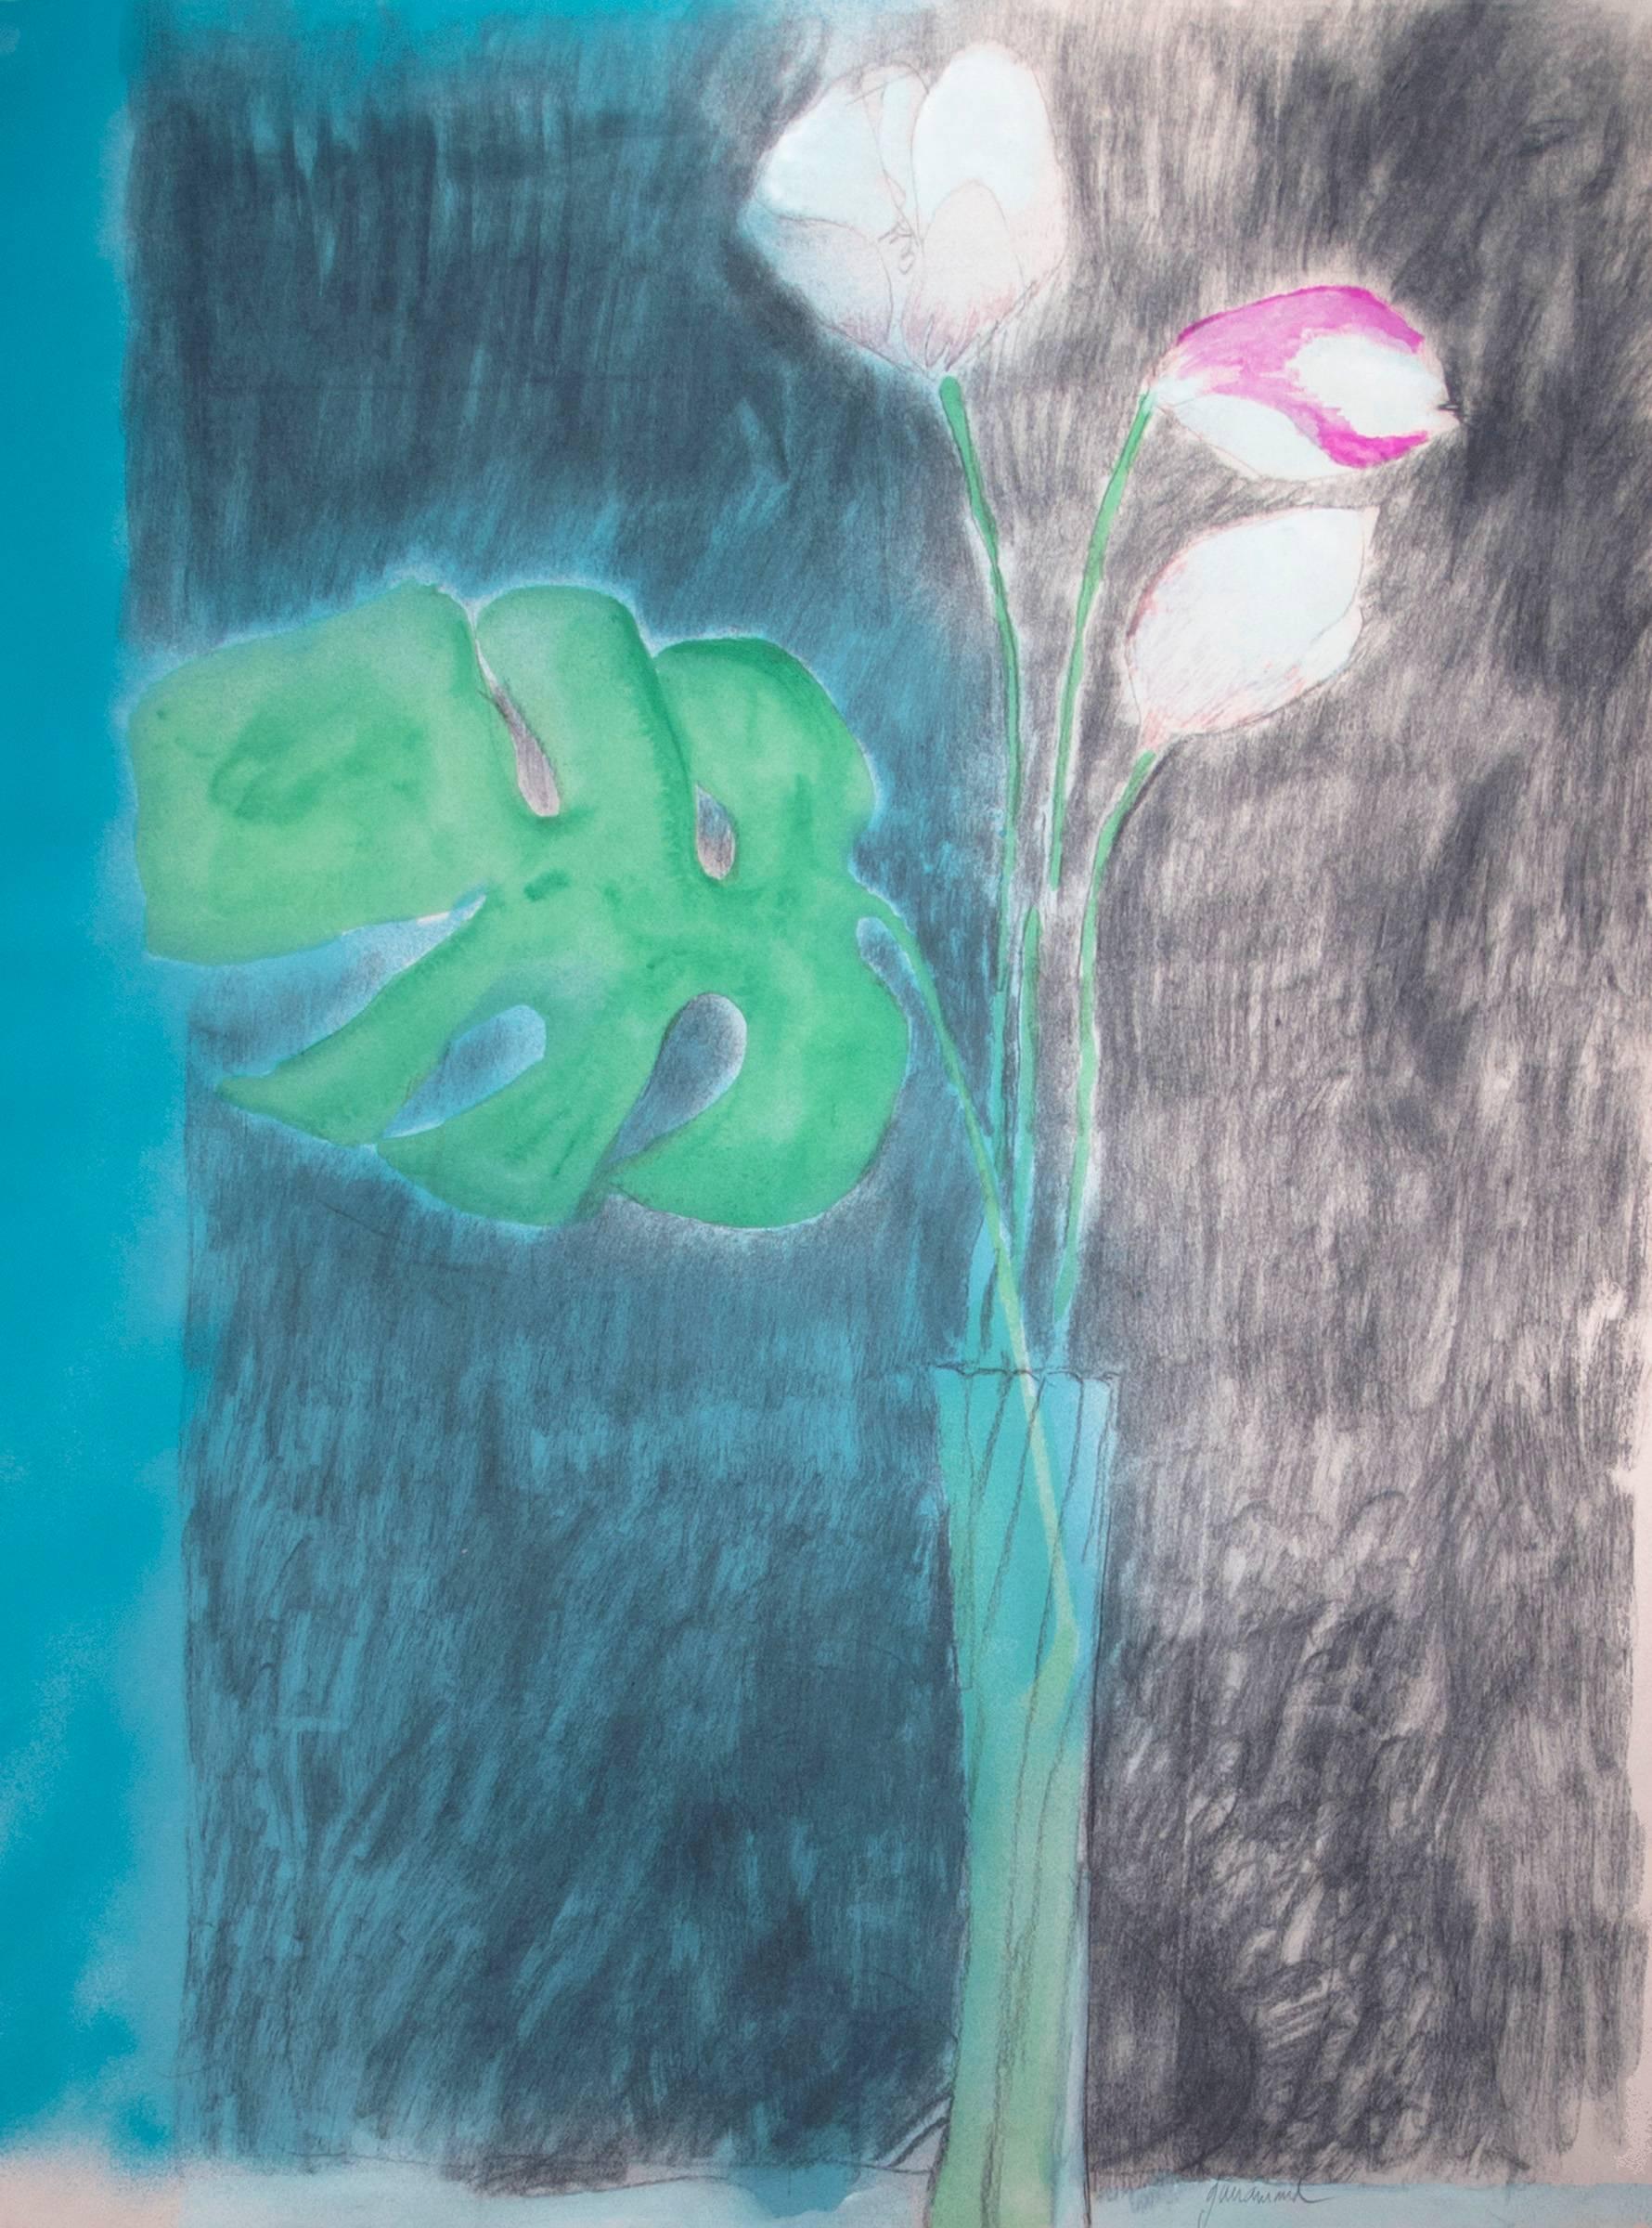 Fleur (Flower) - Mixed Media Art by Paul Guiramand